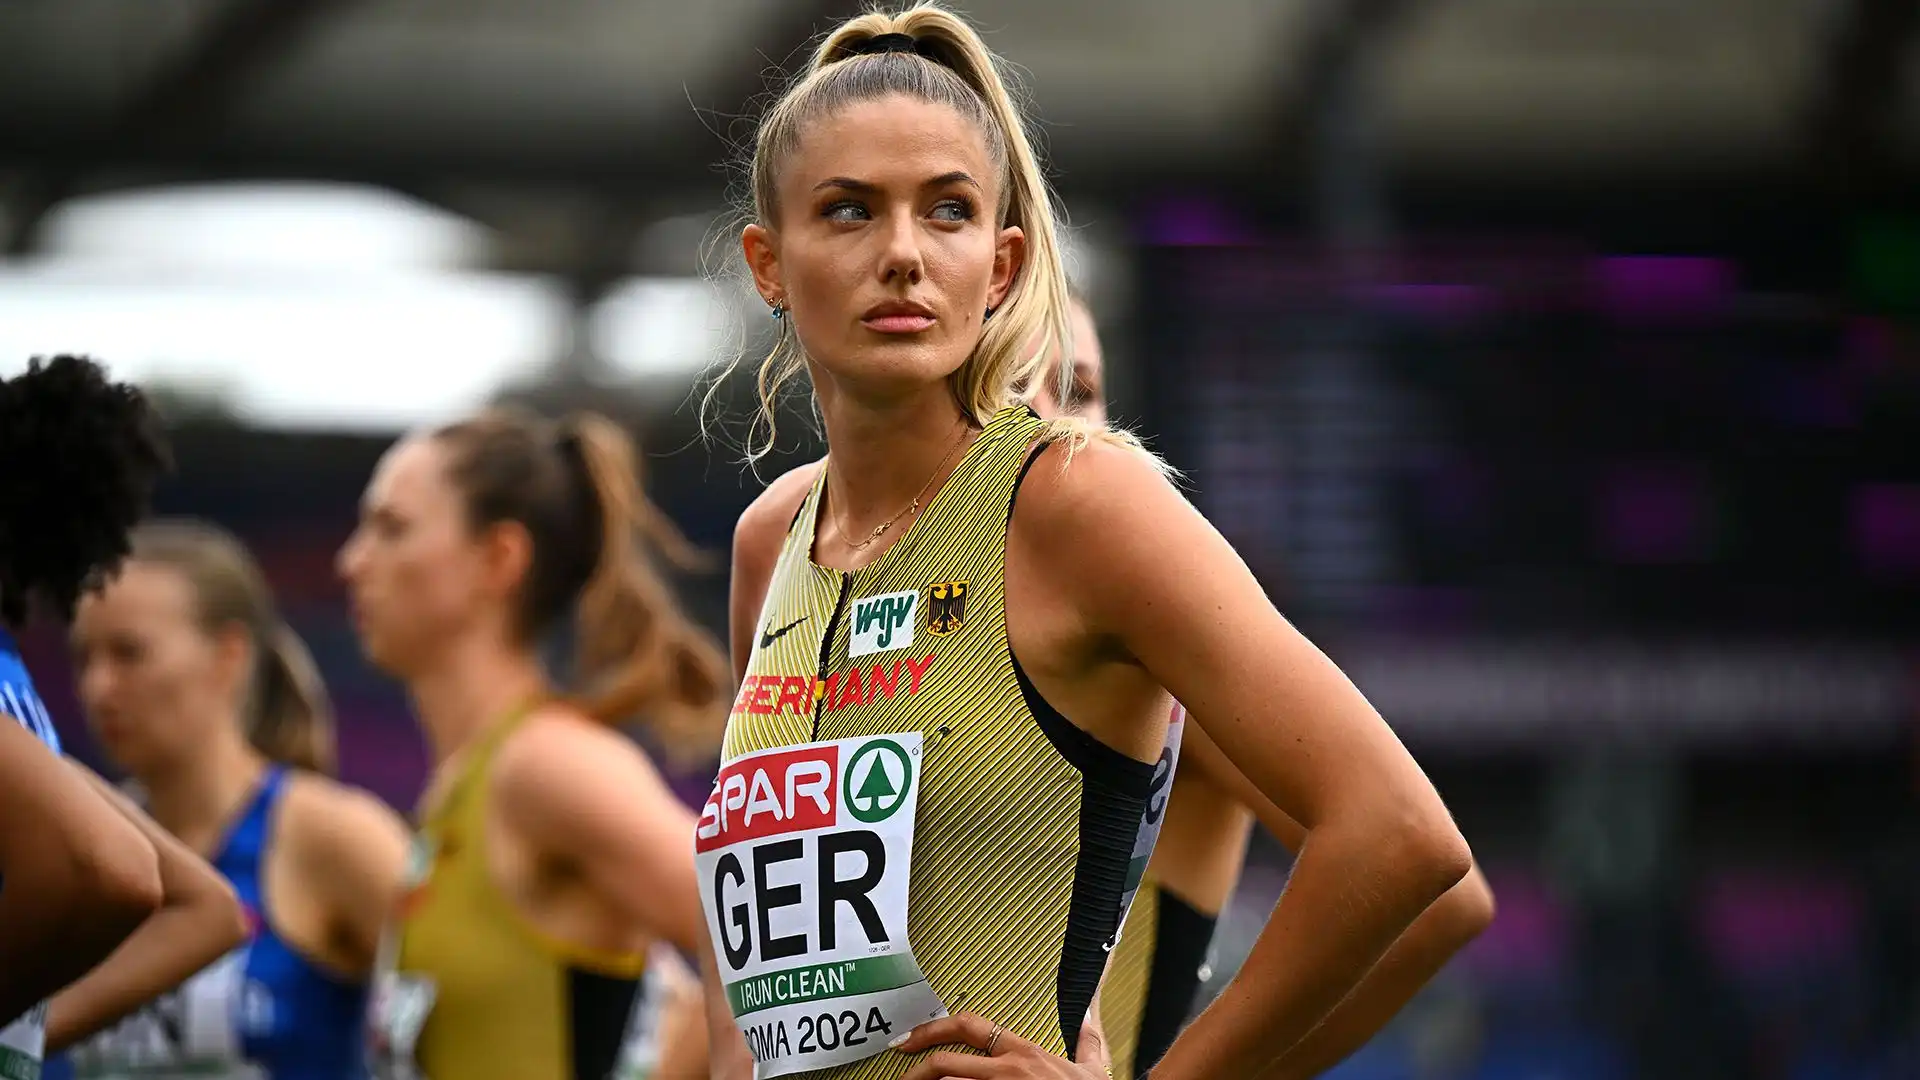 Alica Schmidt: affascinante e talentuosa velocista tedesca, conosciuta per le sue capacità atletiche nei 400 metri